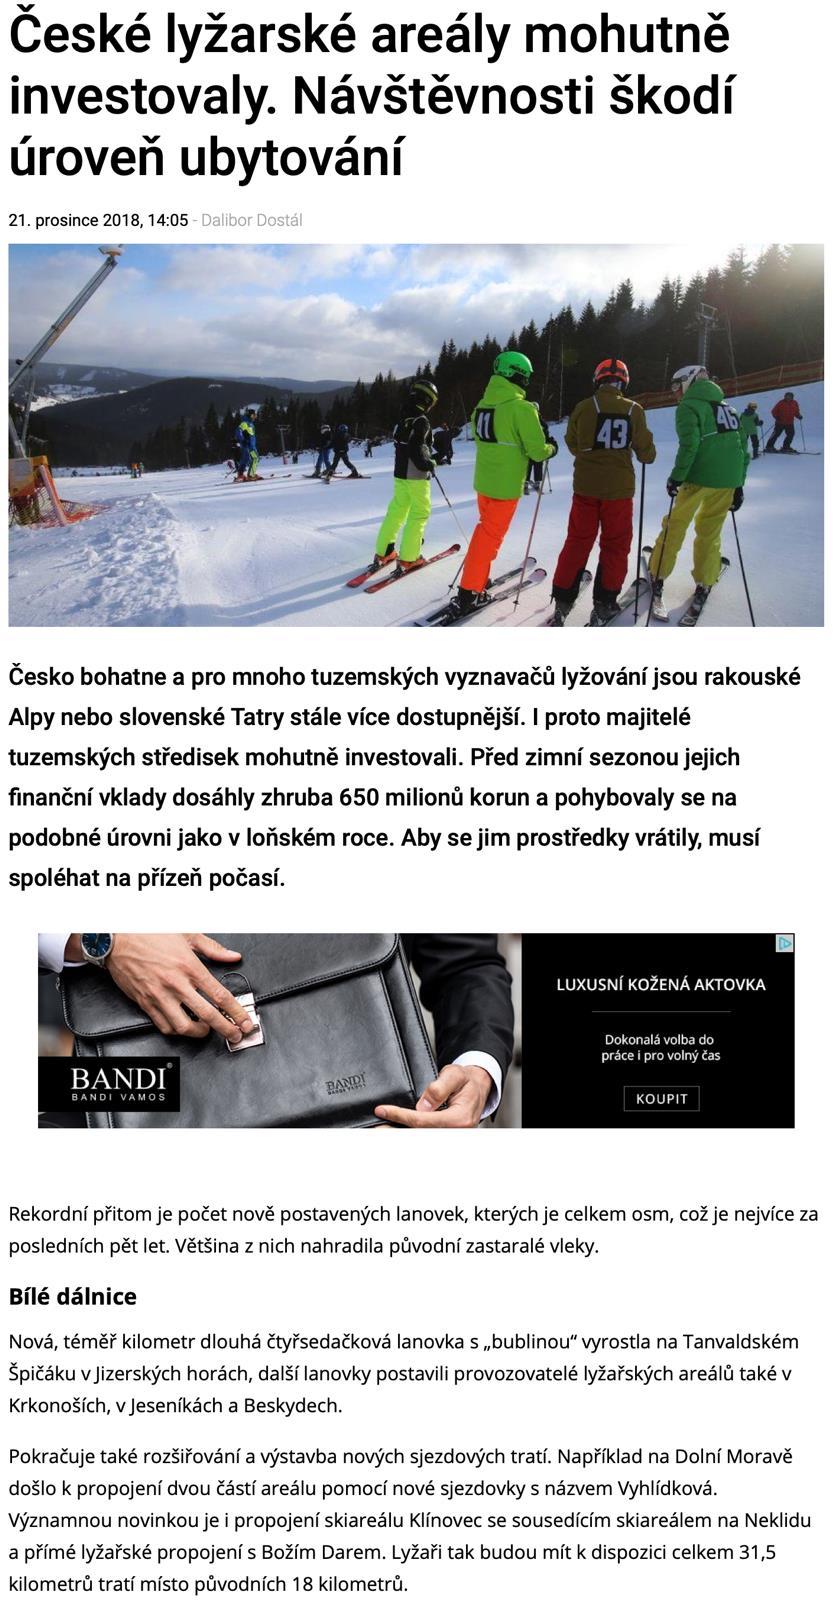 České lyžarské areály mohutně investovaly.